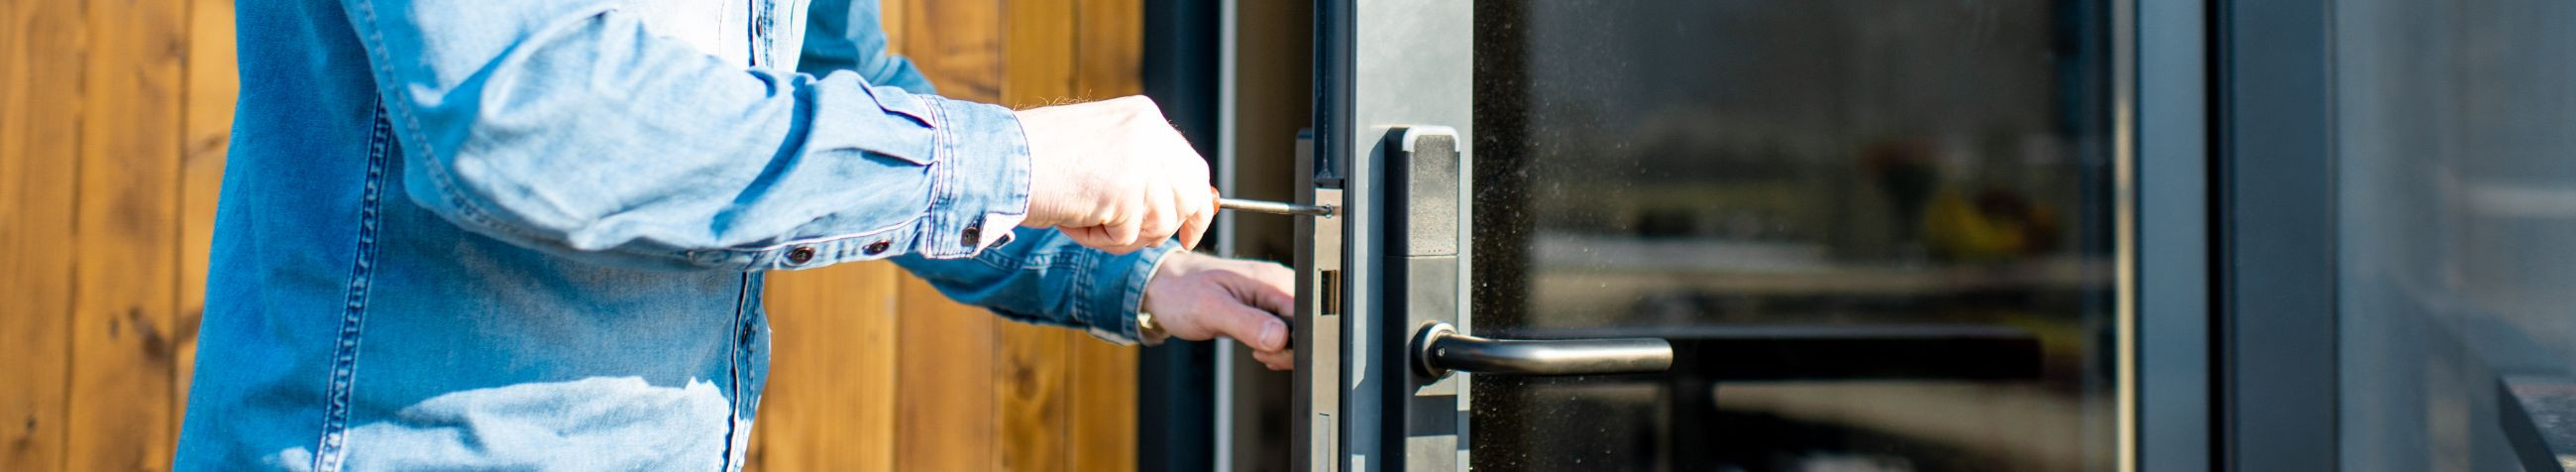 MOTOMET OÜ tegeleb GATE accessories müügiga, pakkudes kvaliteetseid lukke, lukukomplekte ja muid turvalahendusi väravatele ja muudele lukustatavatele objektidele.